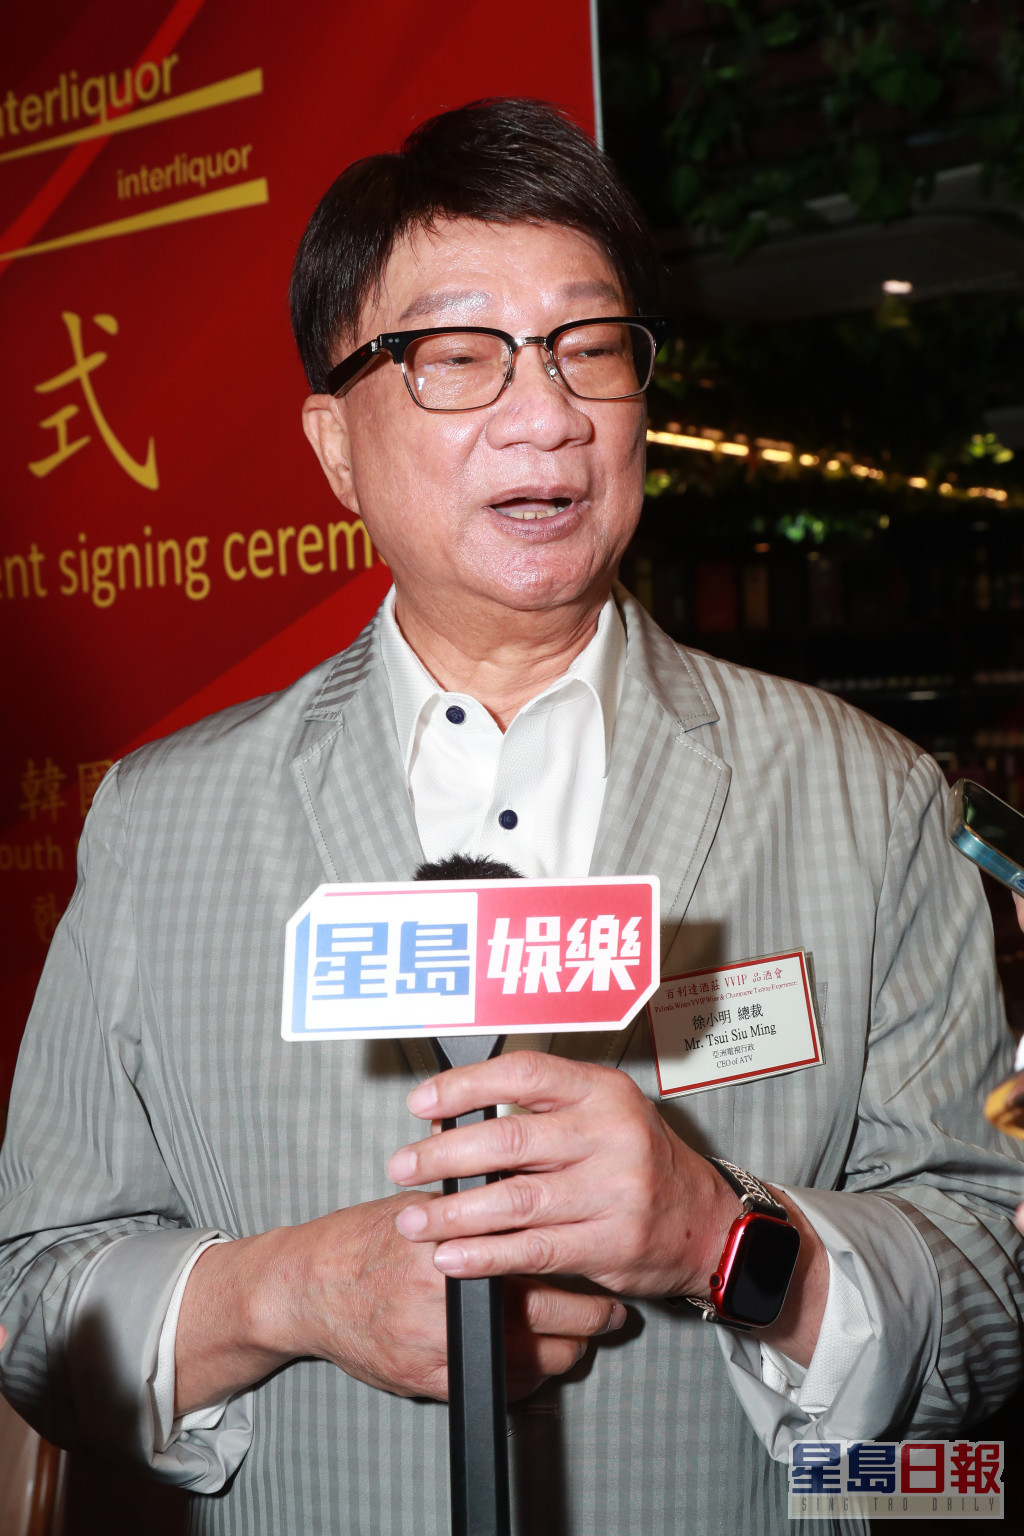 亞洲電視行政總裁徐小明近日忙為籌備6月6日舉行的亞視66周年台慶，屆時作回顧及公布發展新方向。